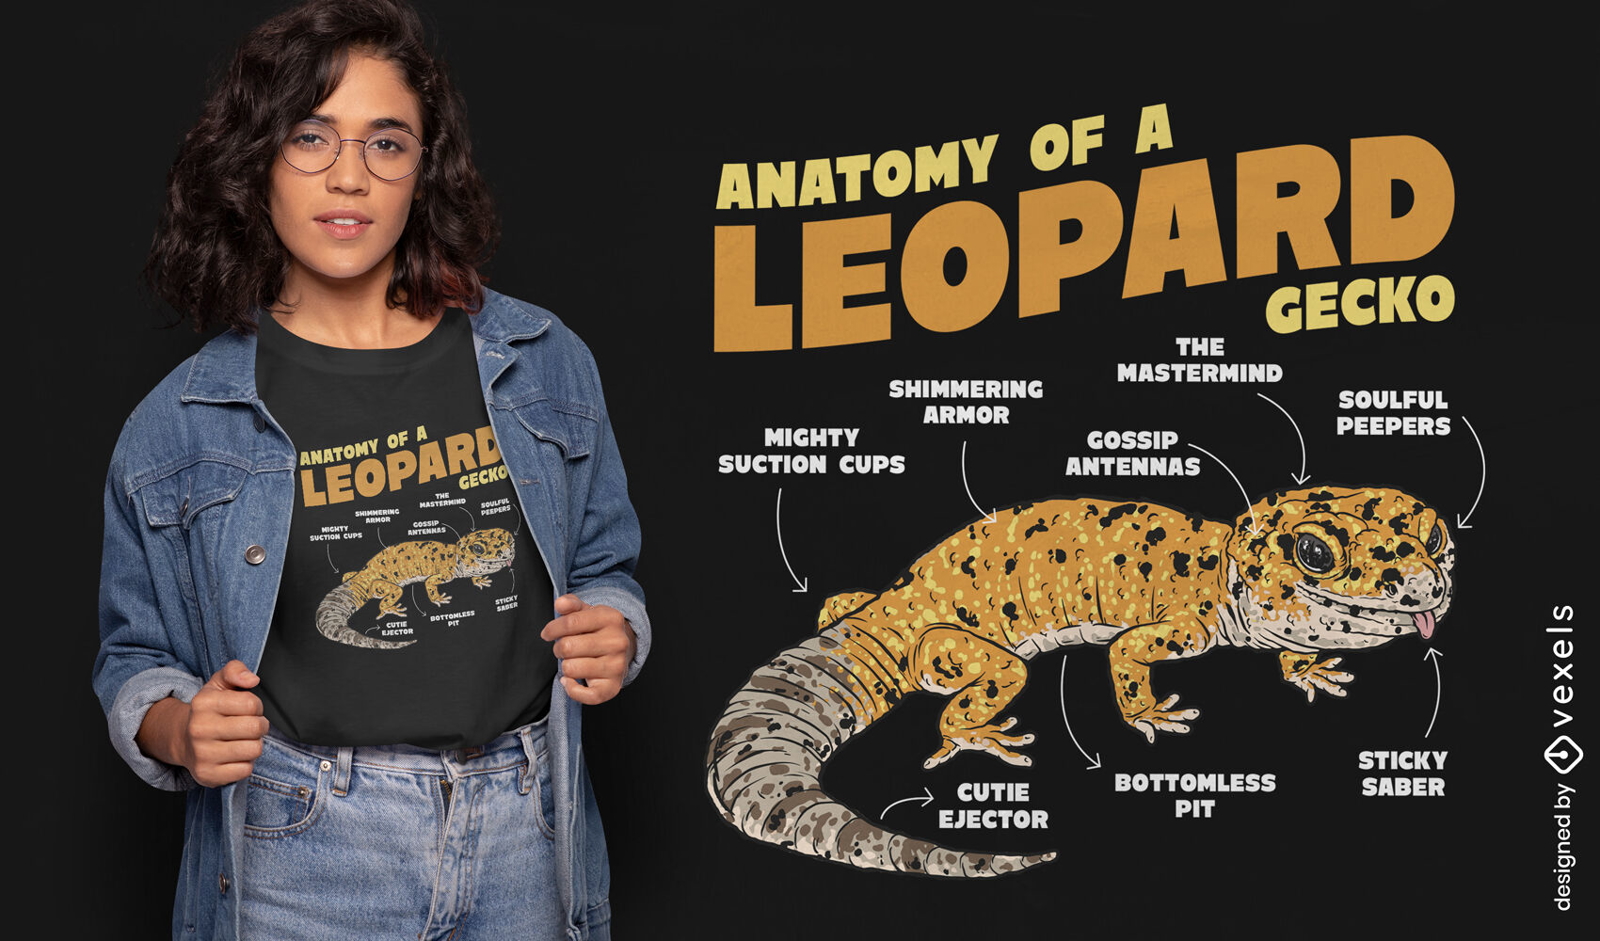 Dise?o de camiseta de anatom?a de gecko leopardo